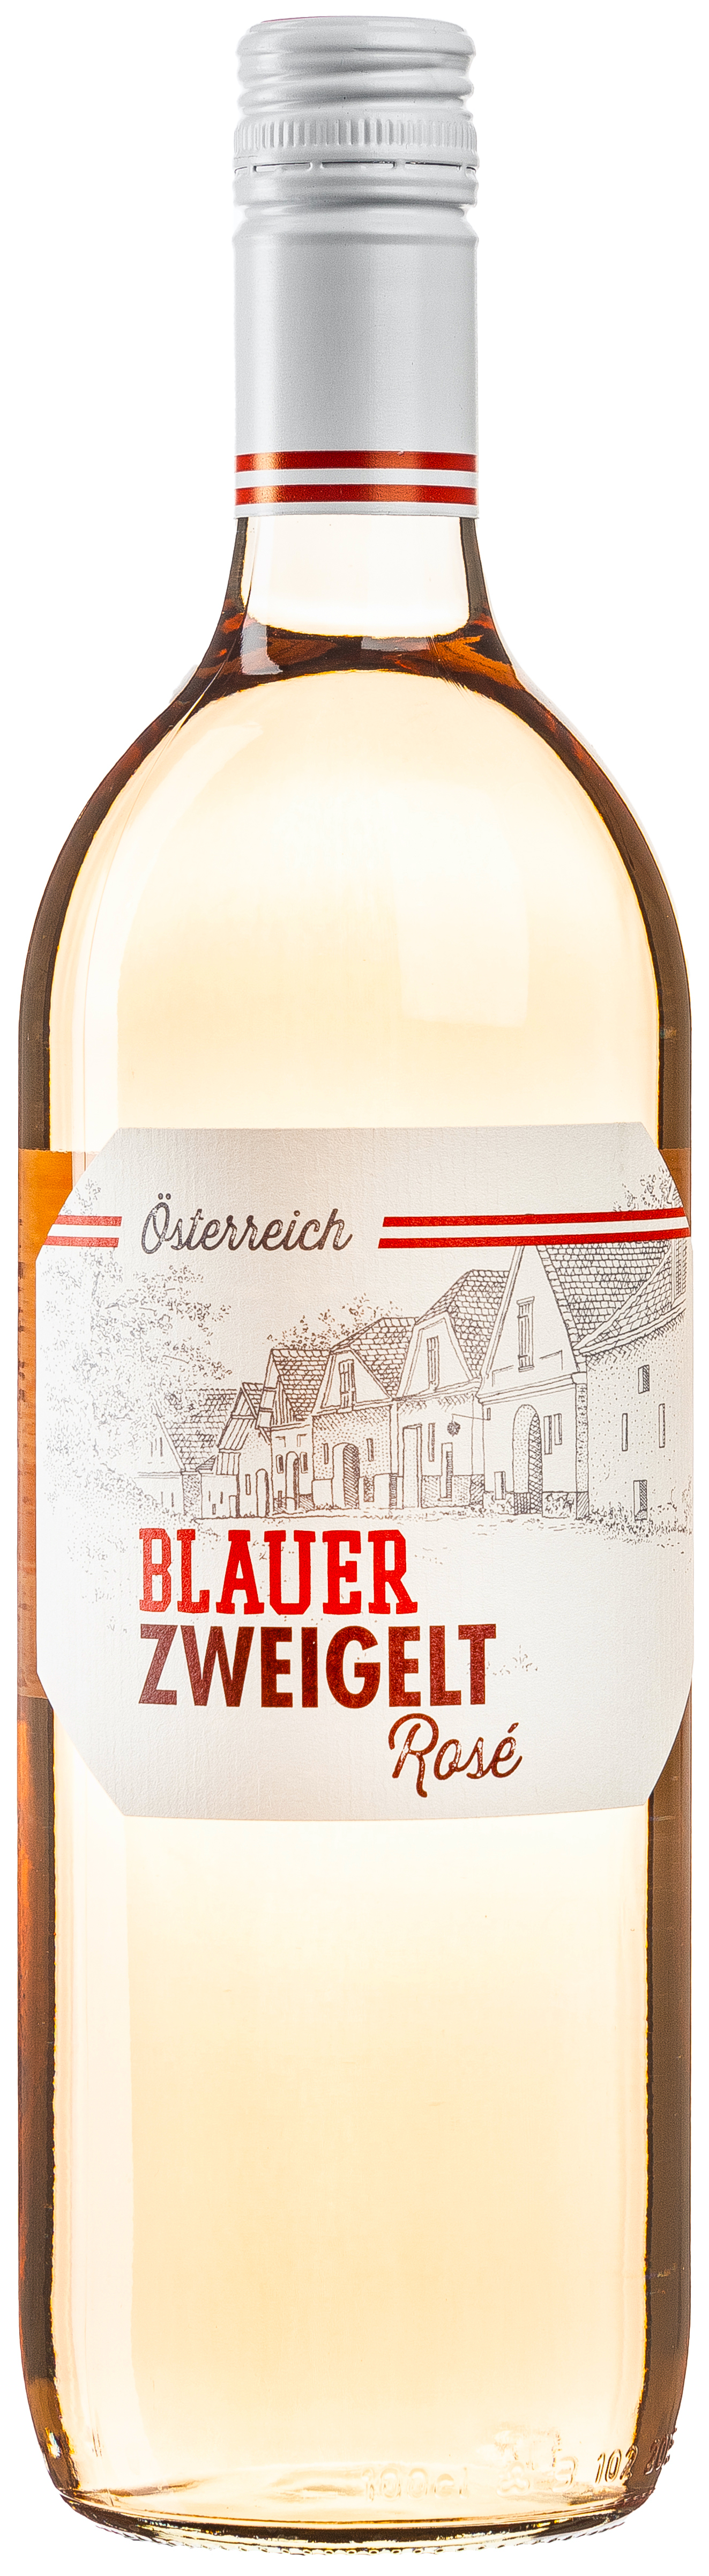 Presshaus Blauer Zweigelt rosé trocken 12,5% vol. 1L